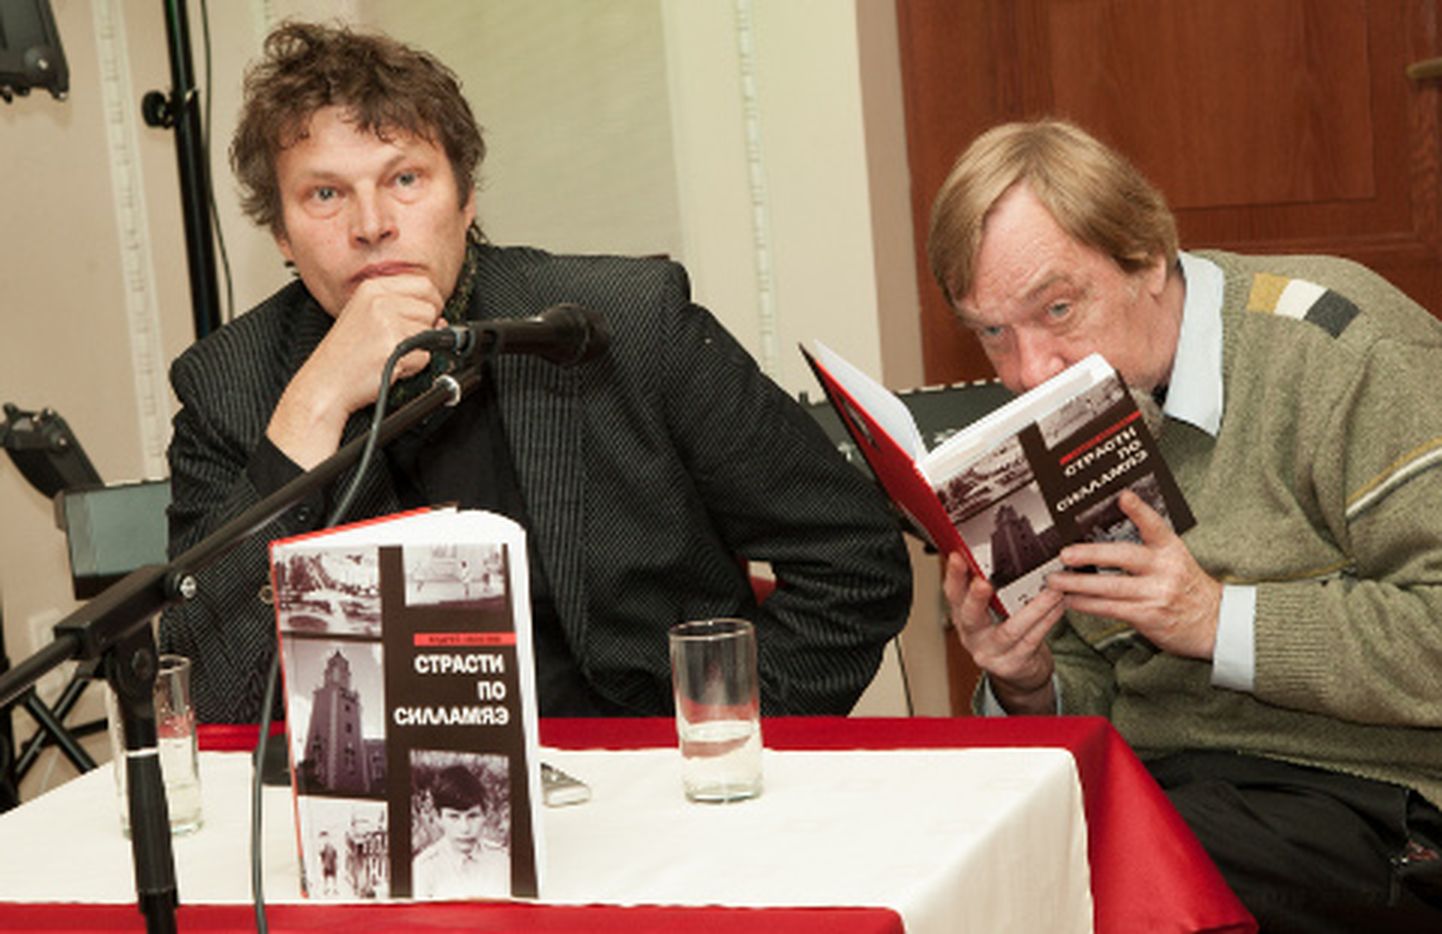 Sillamjaeski Vestniku ajakirjaniku Nikolai Klotškovi (paremal) avalik intervjuu Andrei Hvostoviga näitas, et see pole kirjastaja väljamõeldis, et venelaste seas peetakse "Sillamäe passiooni" skandaalseks raamatuks.